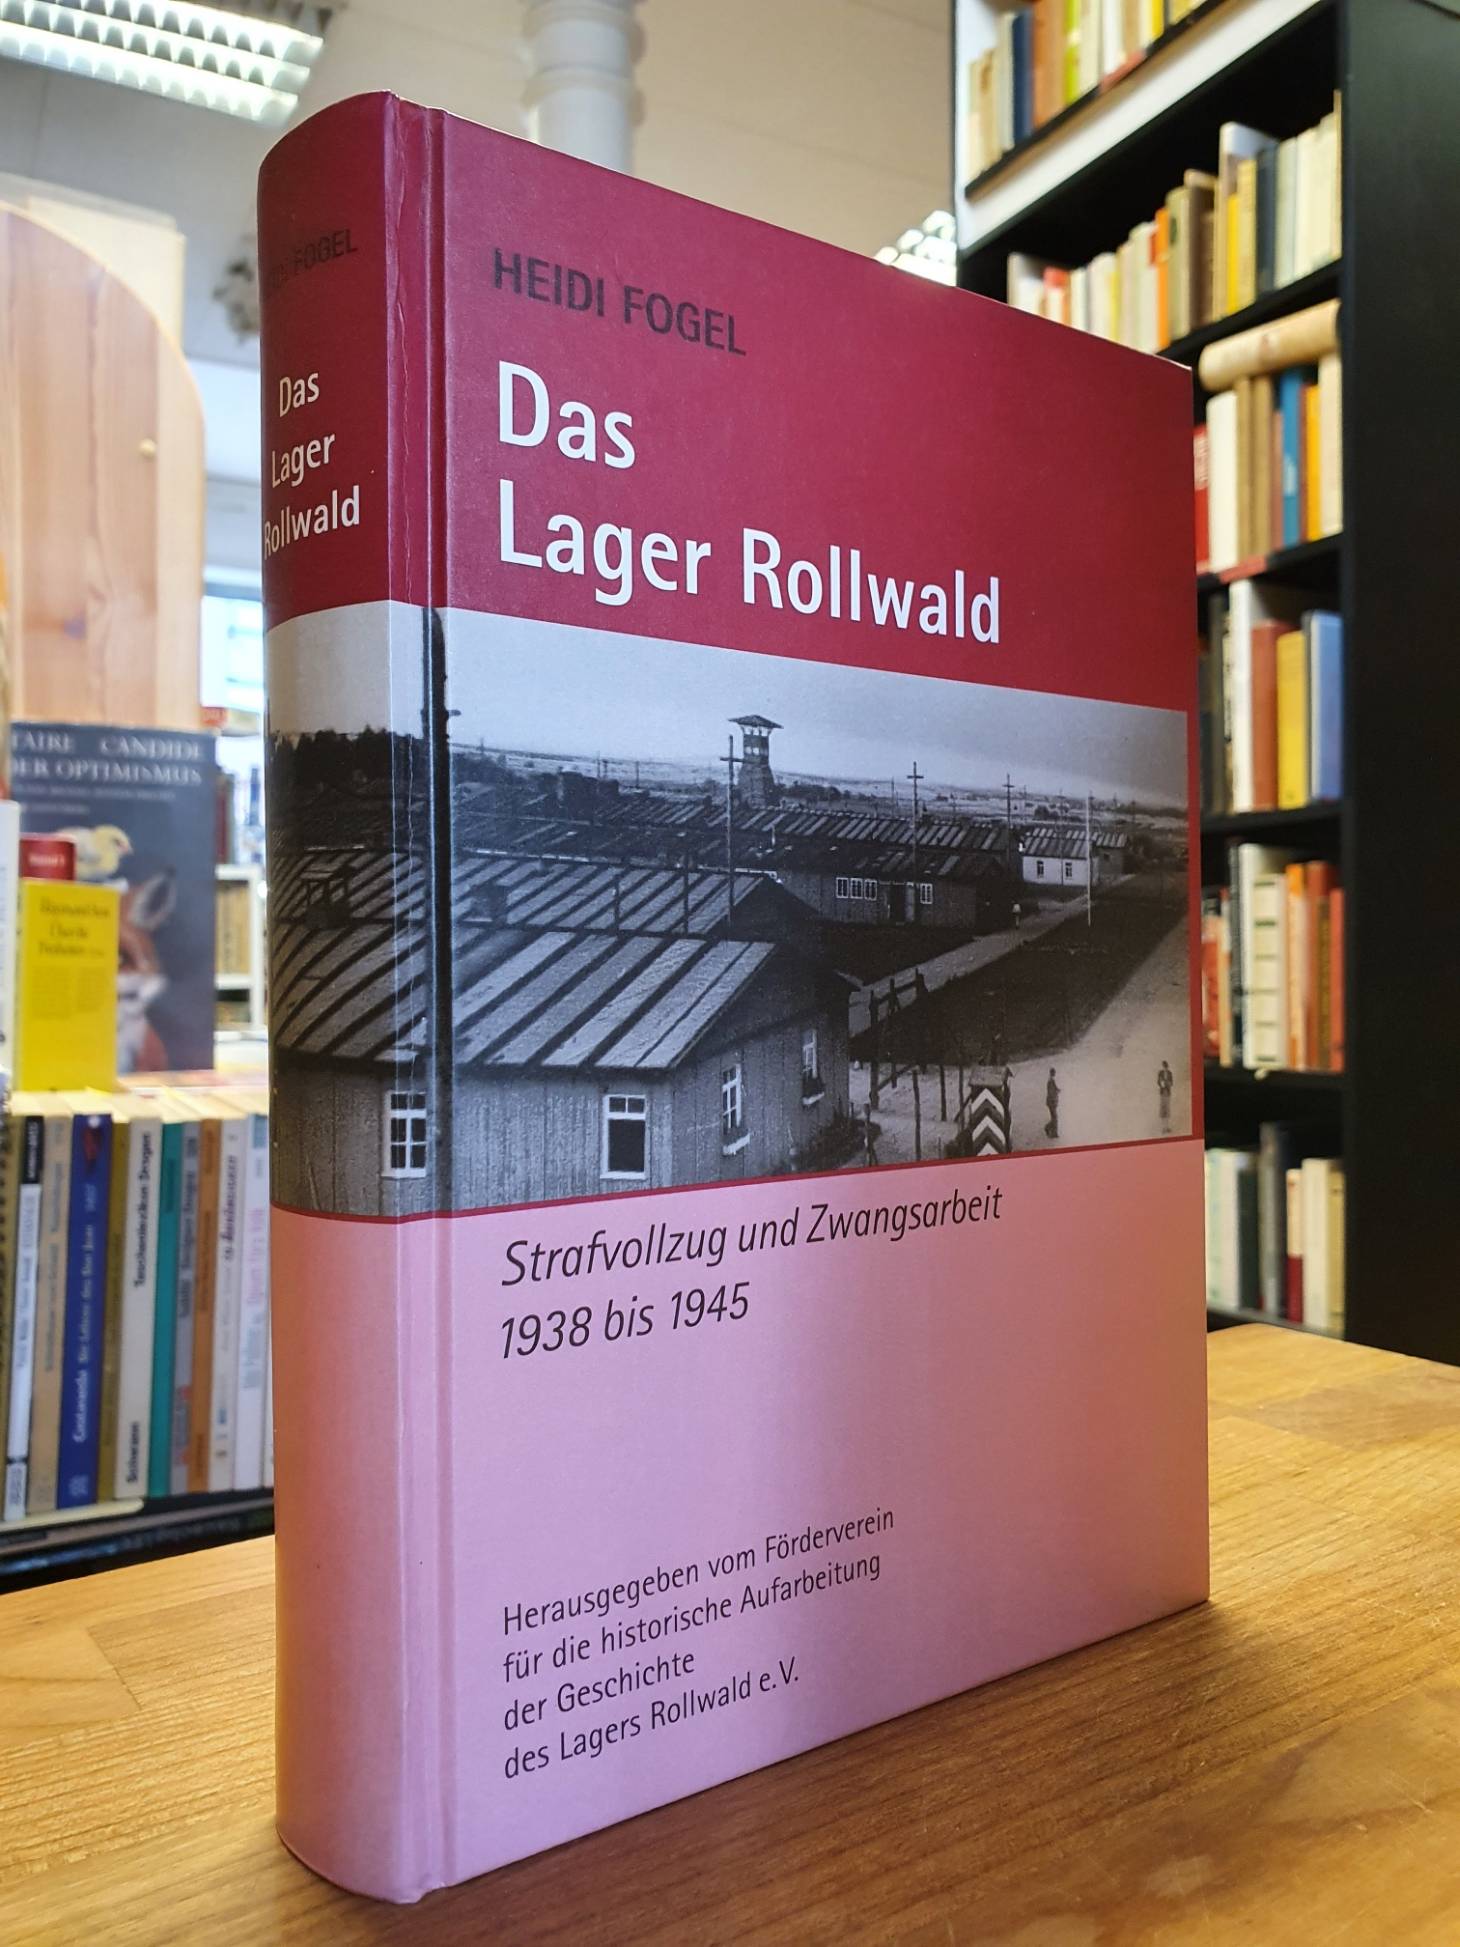 Fogel, Das Lager Rollwald – Strafvollzug und Zwangsarbeit 1938 bis 1945,